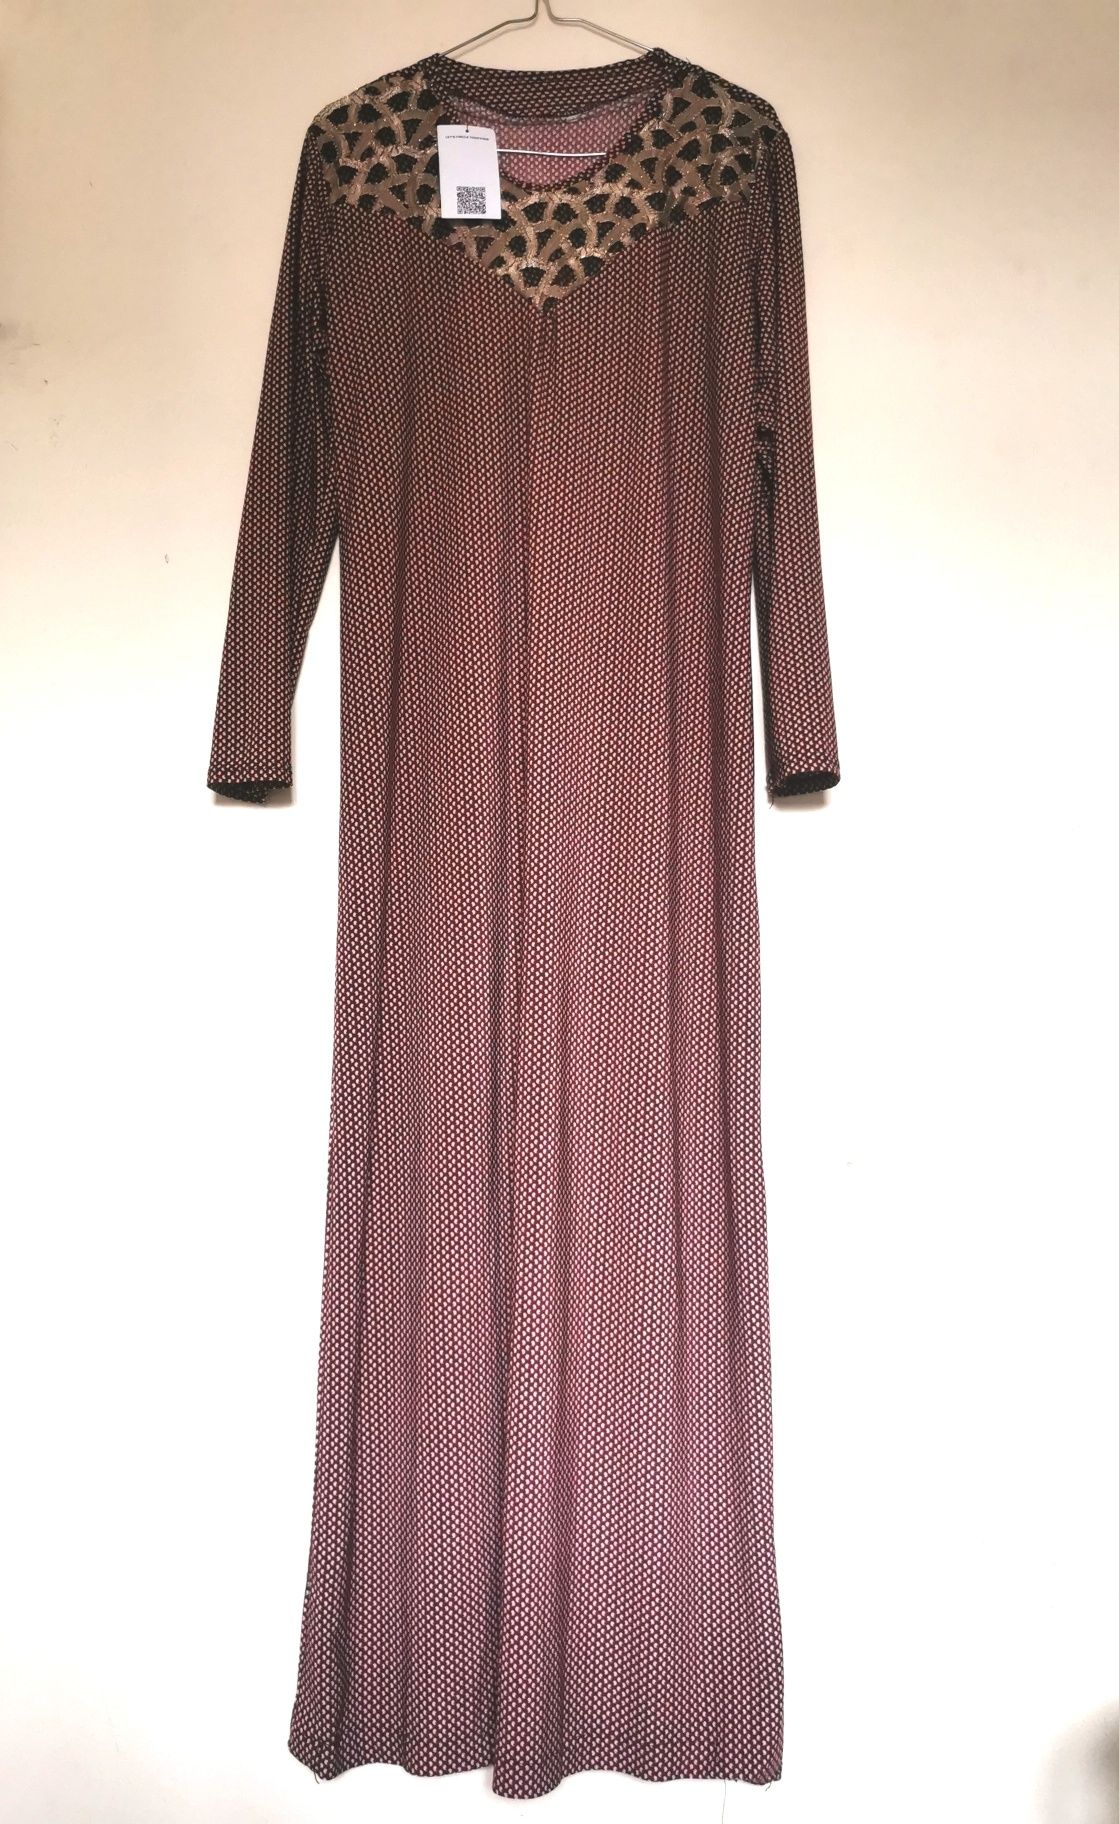 Długa sukienka Vintage r. M
Kolor bordowy, złota koronką z przodu.

#v